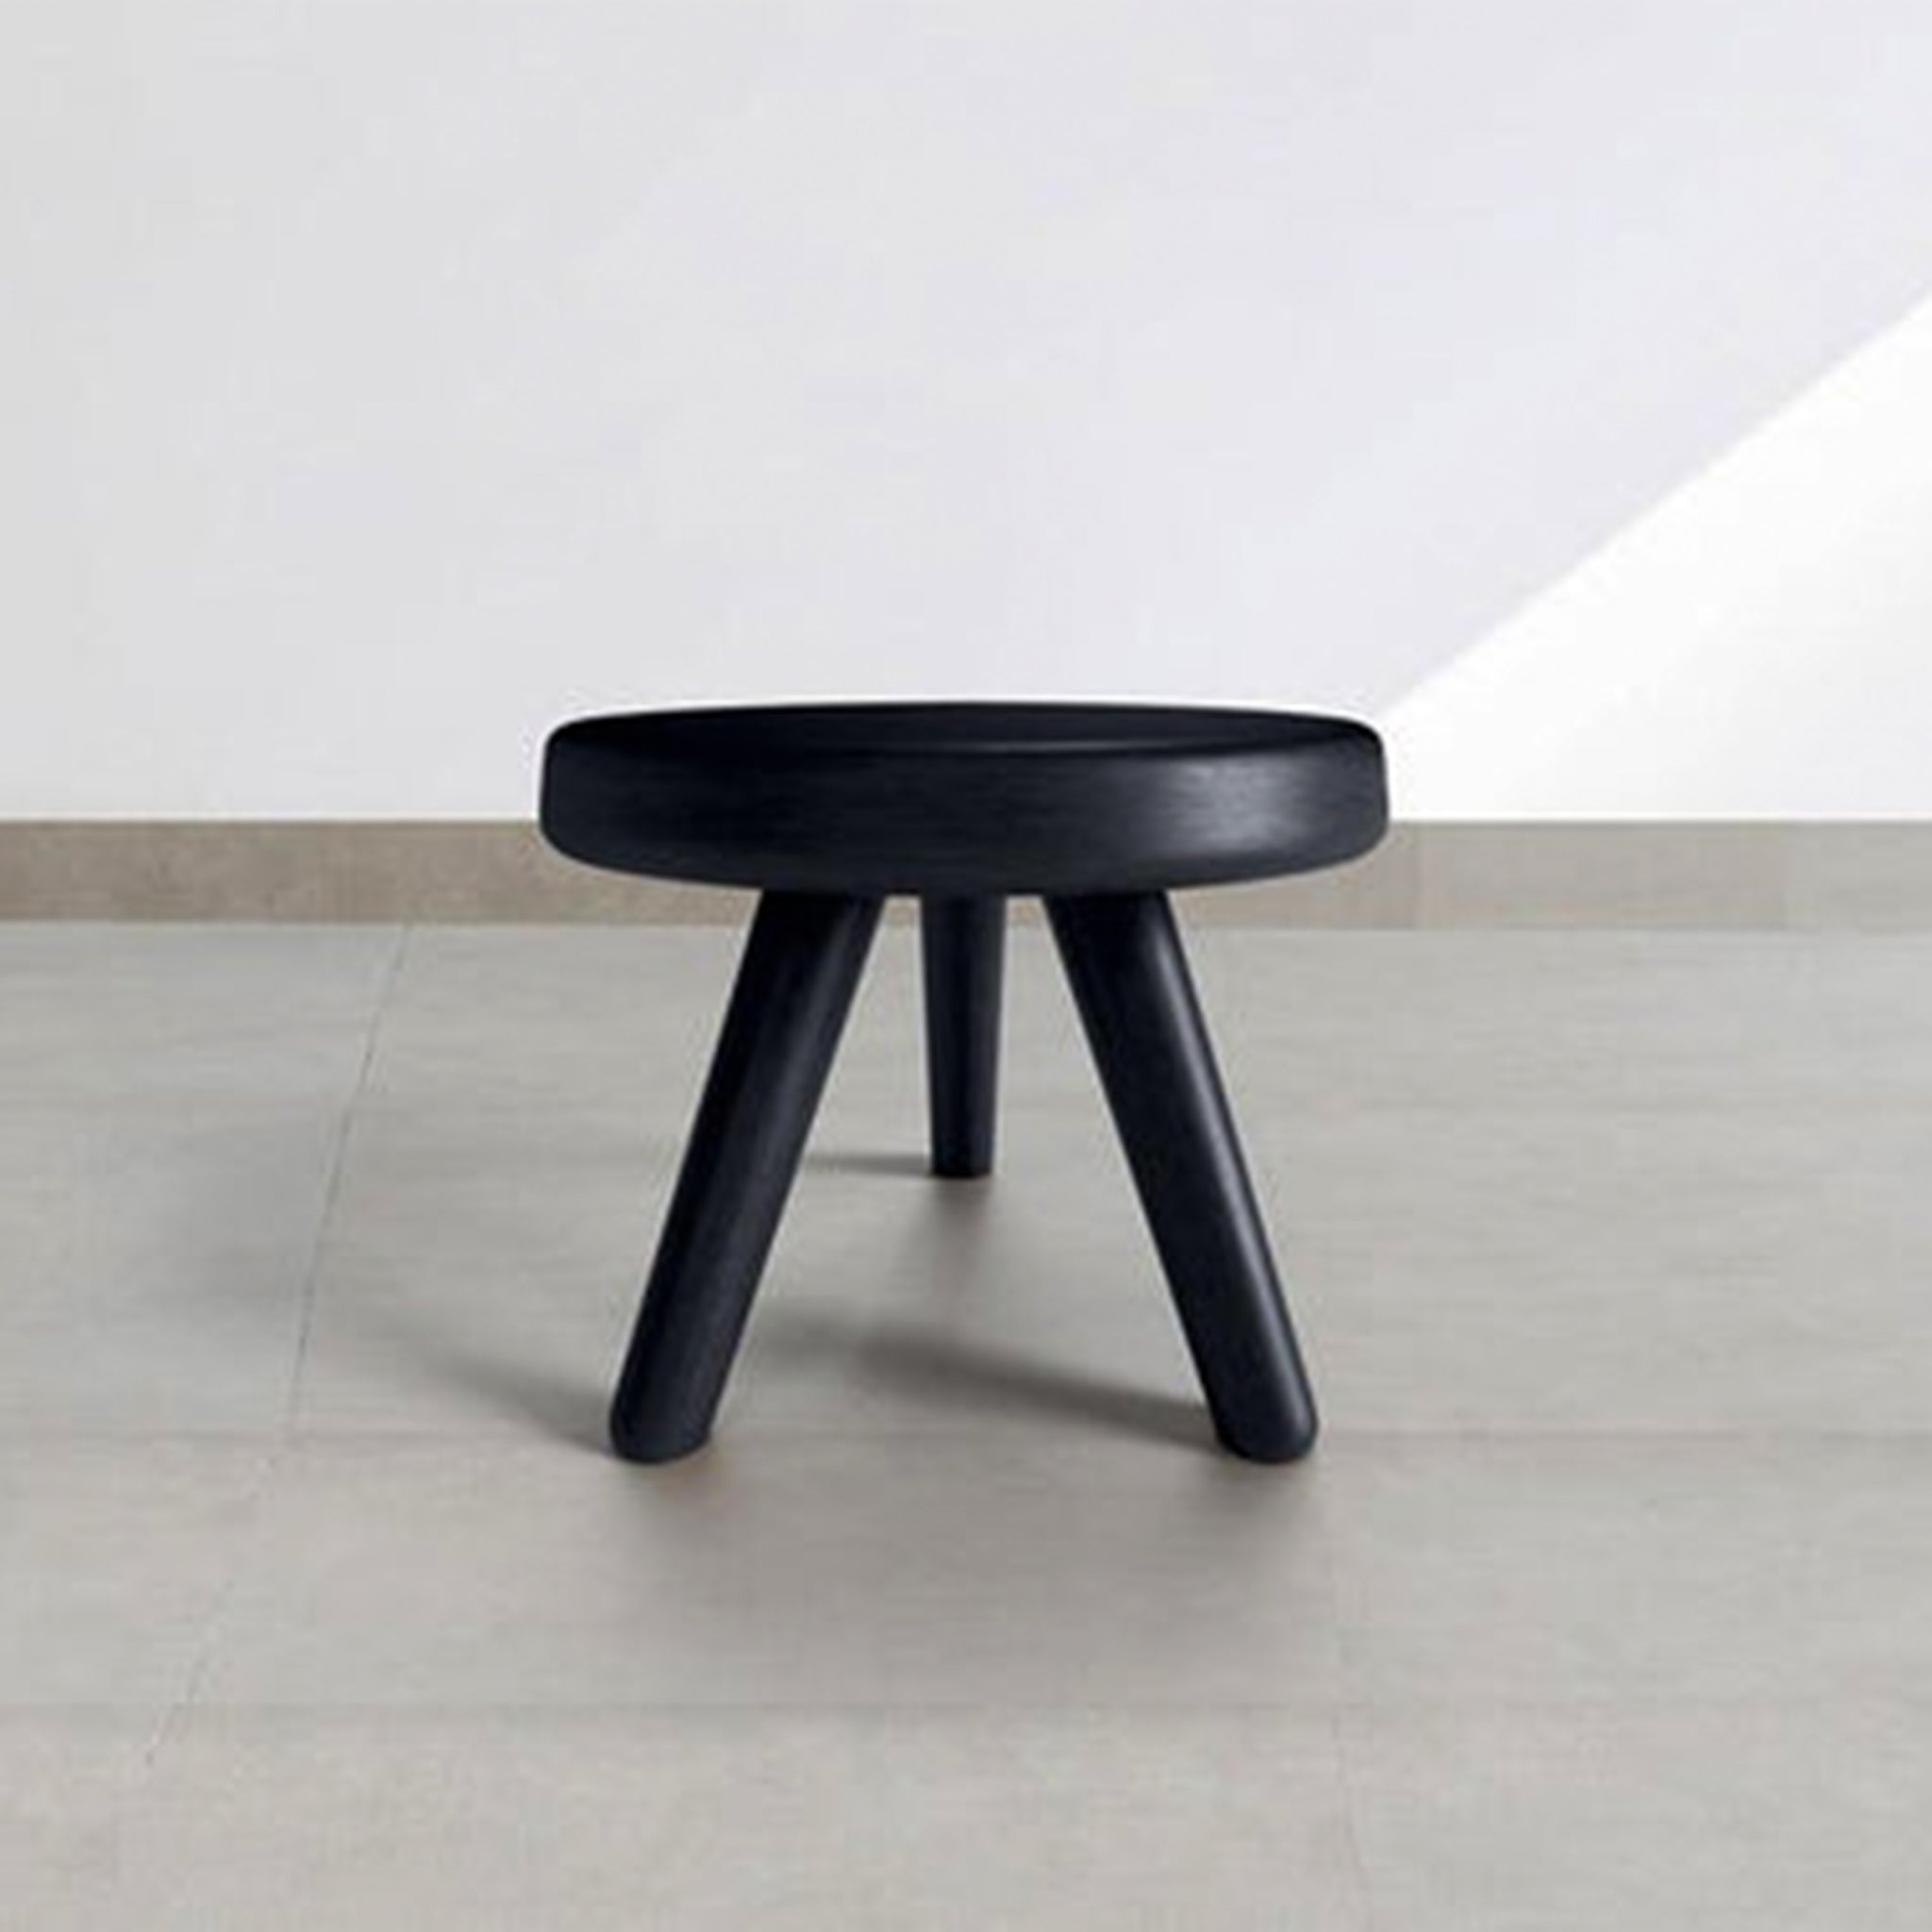 Black wooden mini stool with three legs in a minimalist room